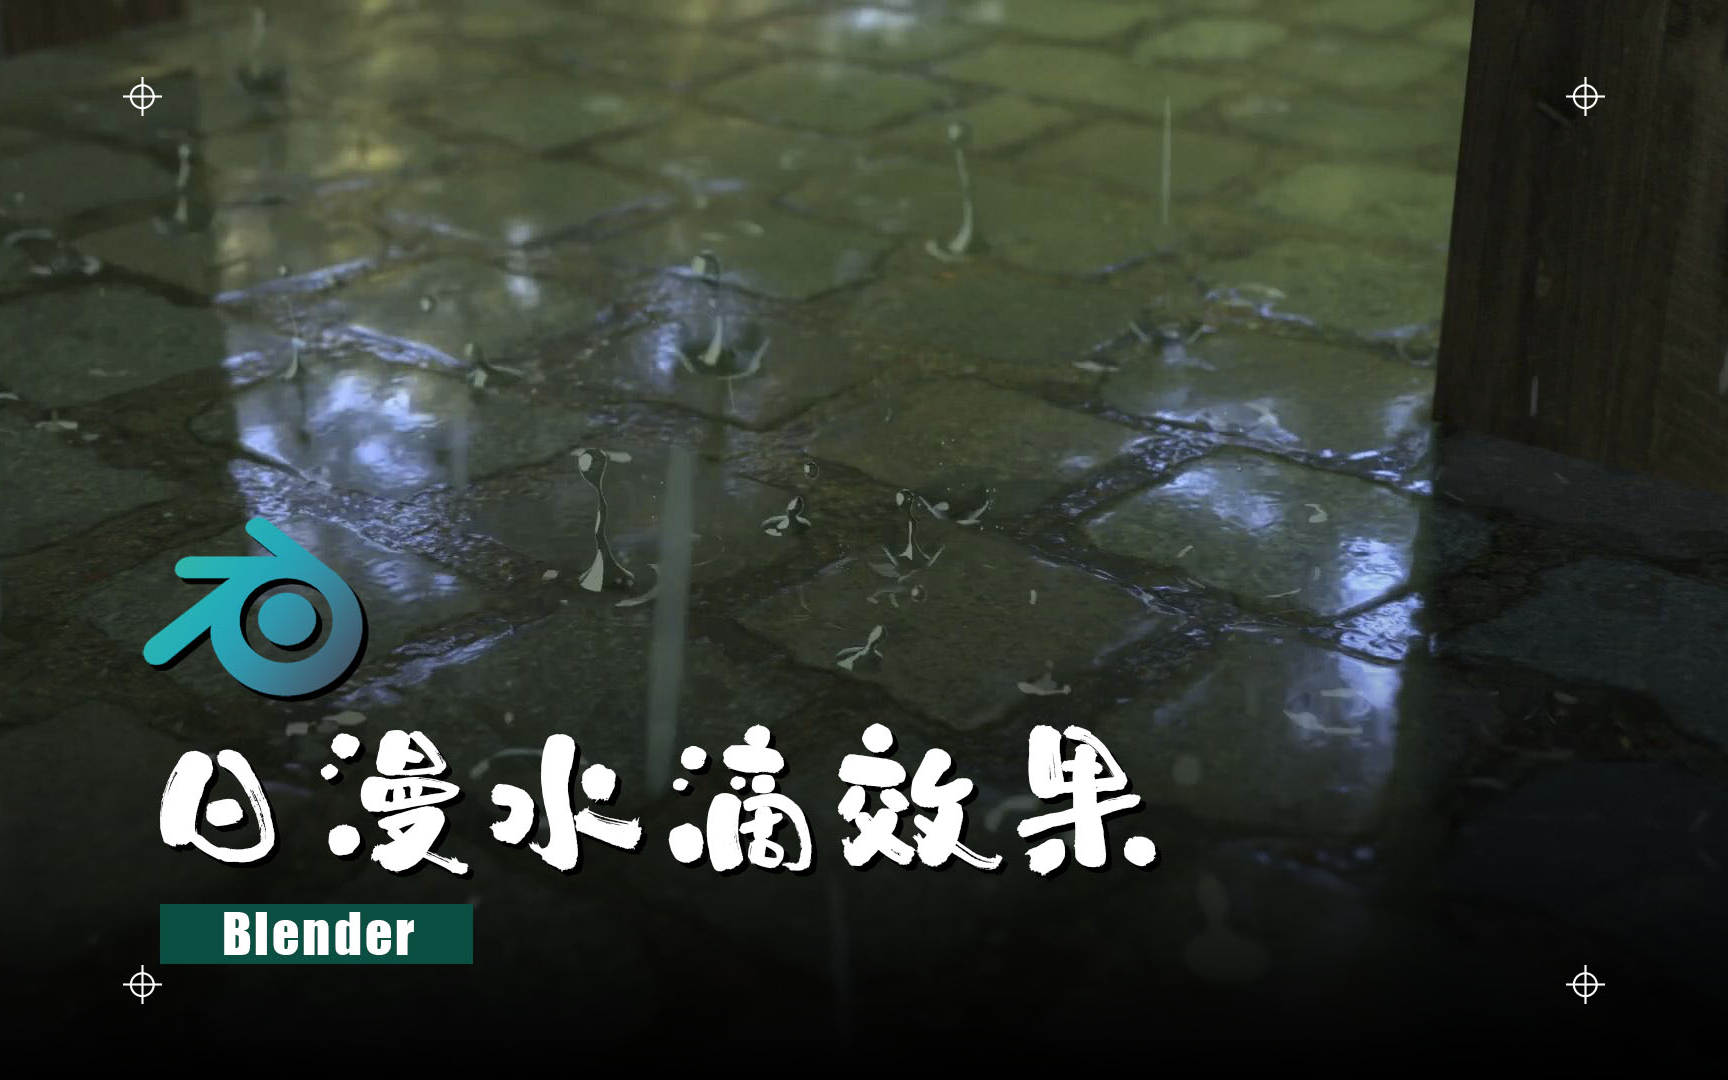 日漫雨点水滴 【blender】